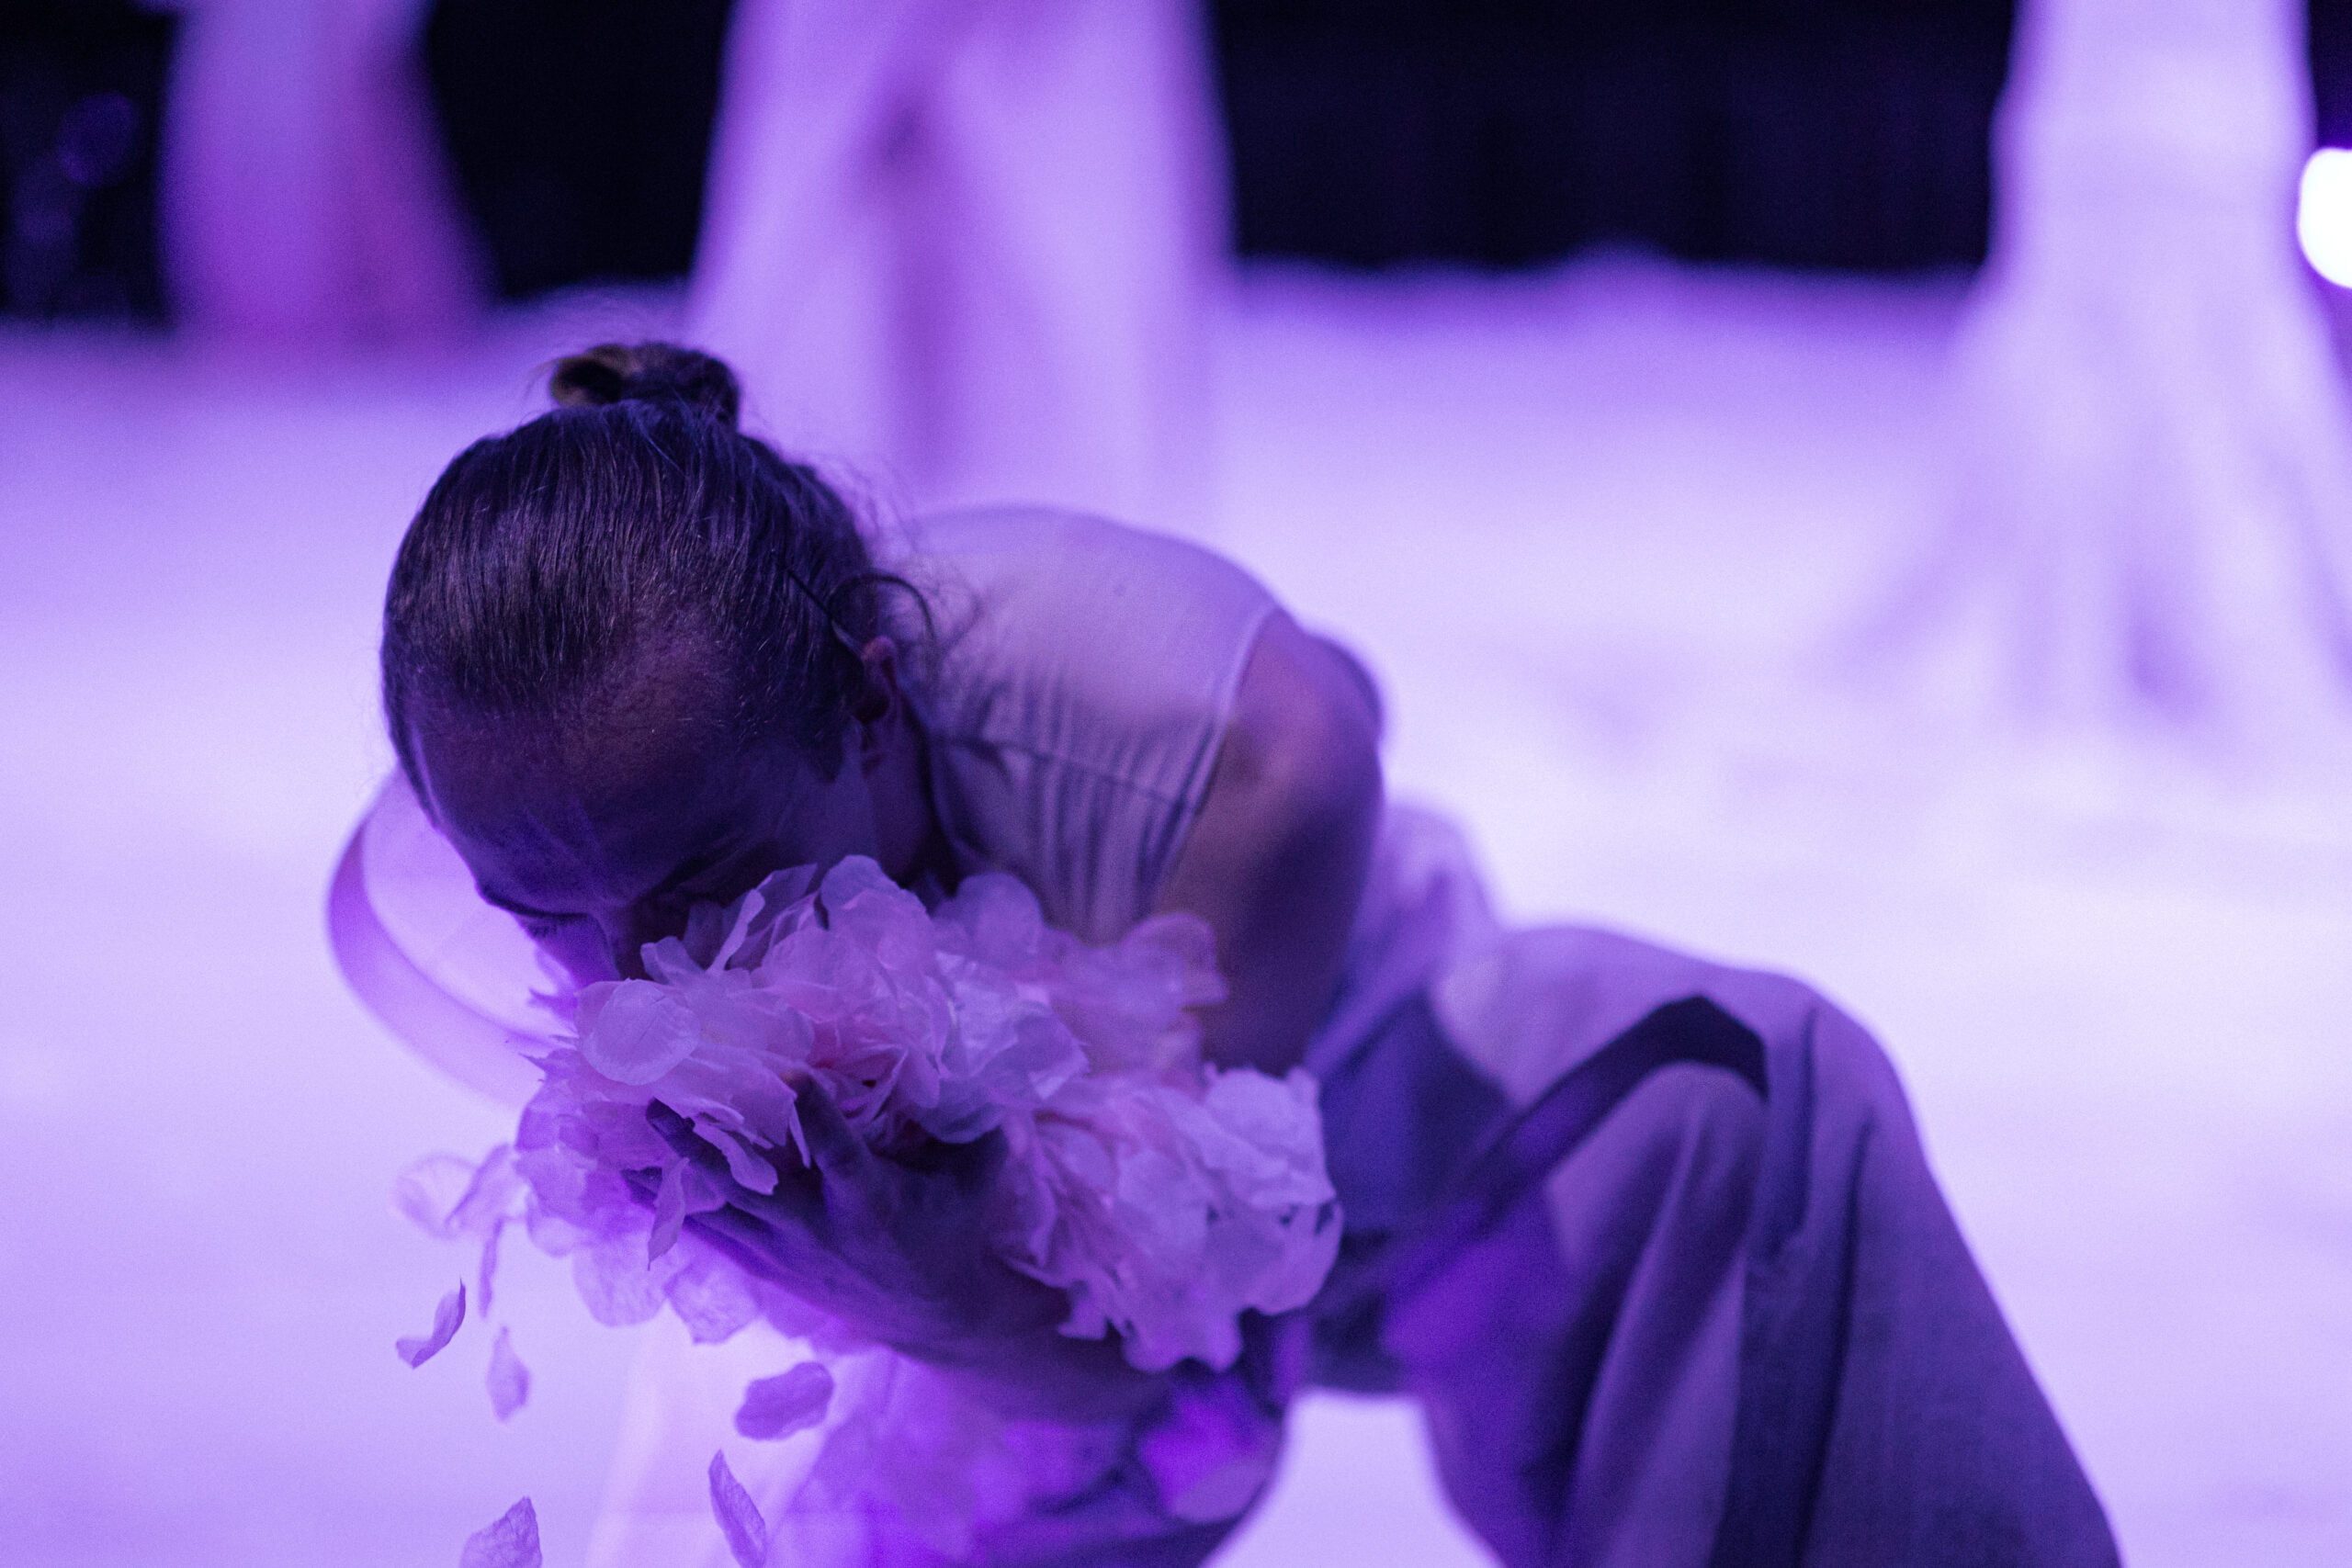 Płatki i baśnie, zdjęcie ze spektaklu Panta Rei Danseteater, tancerz pochylony do przodu chowa twarz w imitacji płatków kwiatów